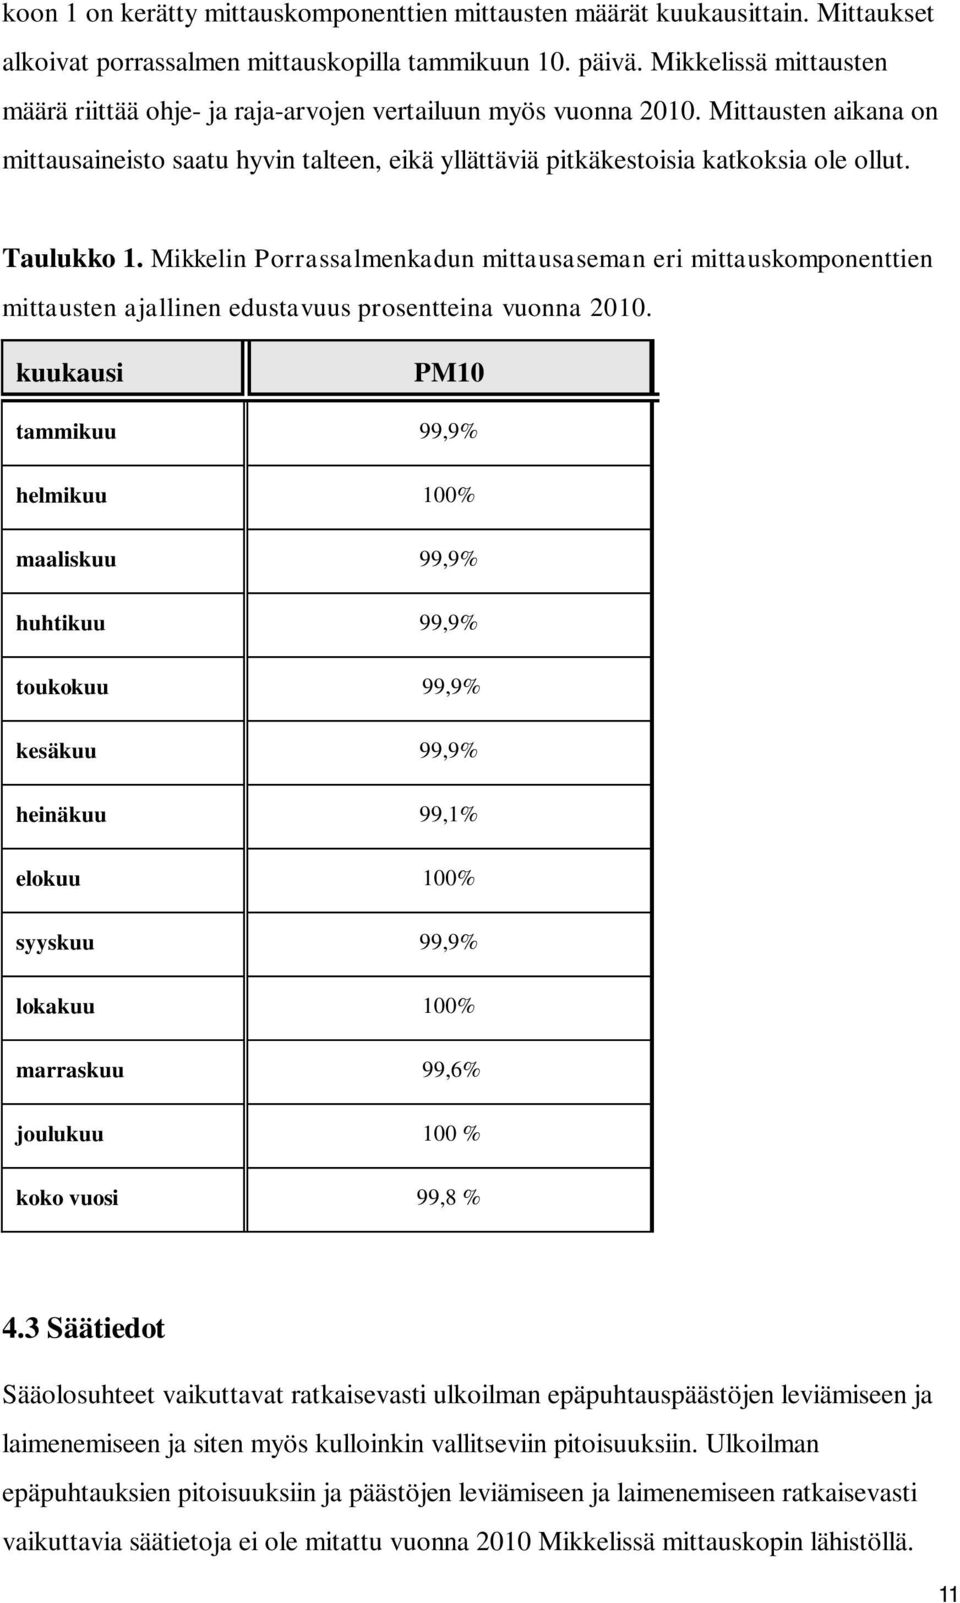 Taulukko 1. Mikkelin Porrassalmenkadun mittausaseman eri mittauskomponenttien mittausten ajallinen edustavuus prosentteina vuonna 2010.